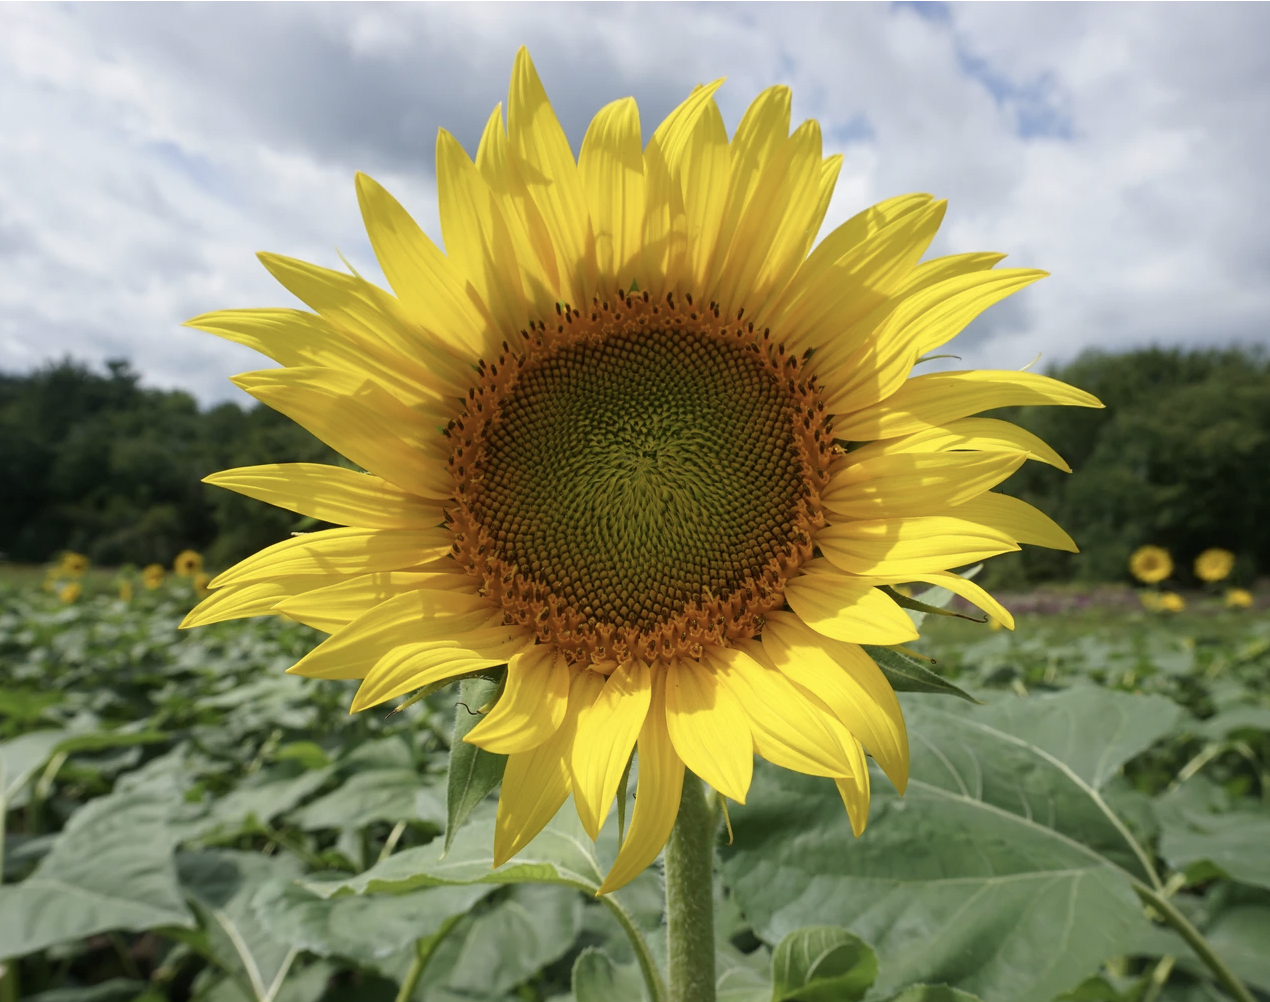 Sunflower of Hope 2020